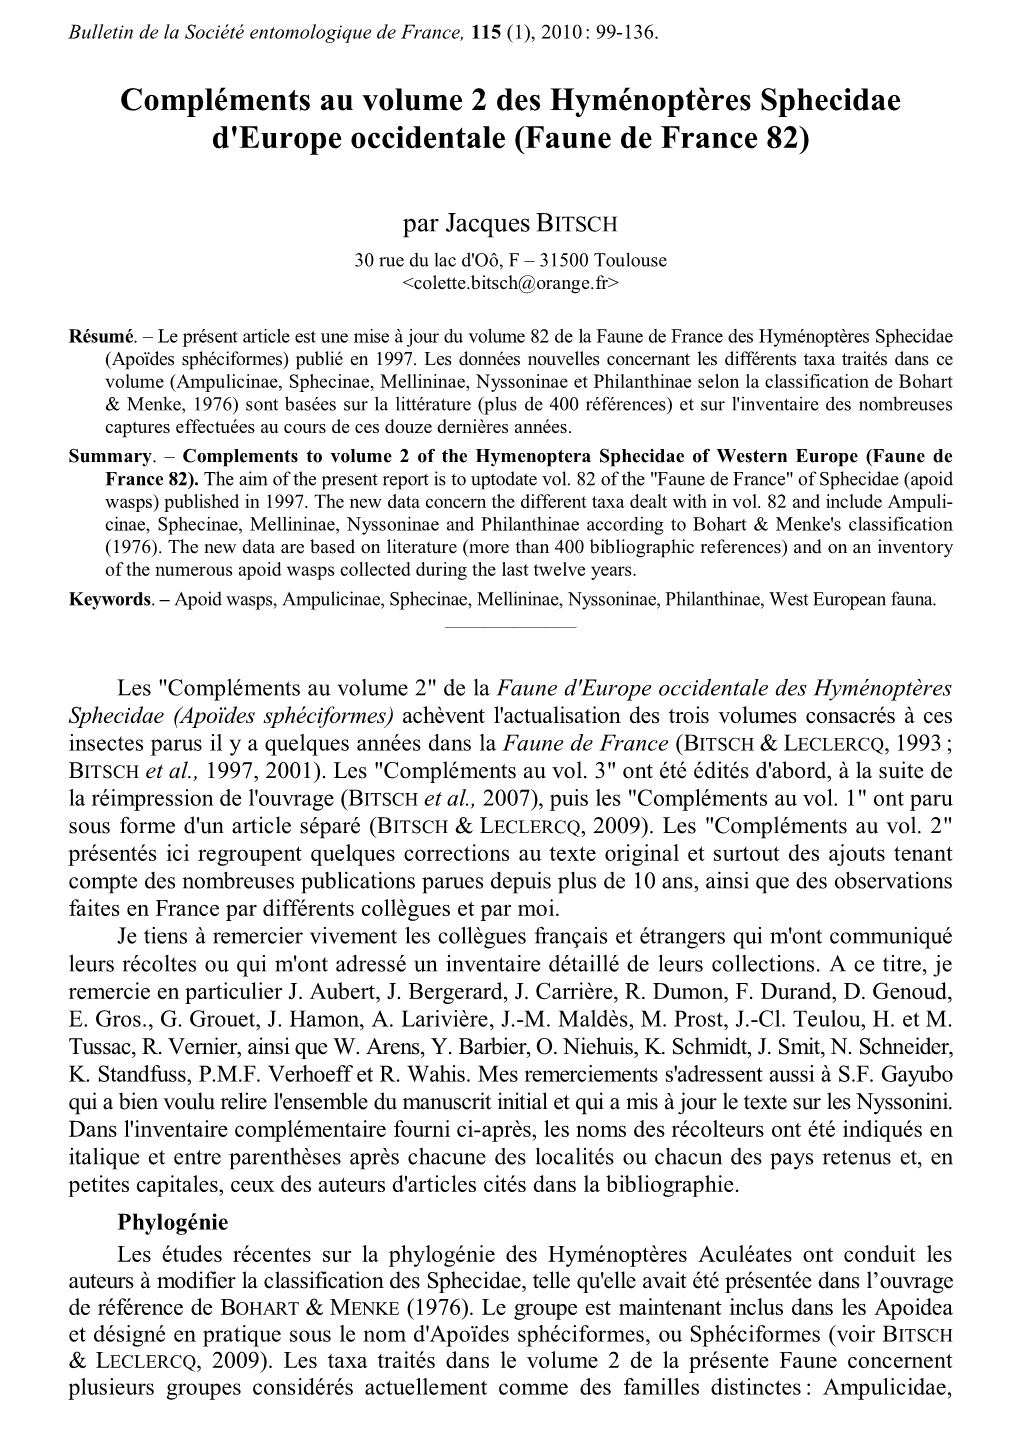 Compléments Au Volume 2 Des Hyménoptères Sphecidae D'europe Occidentale (Faune De France 82)